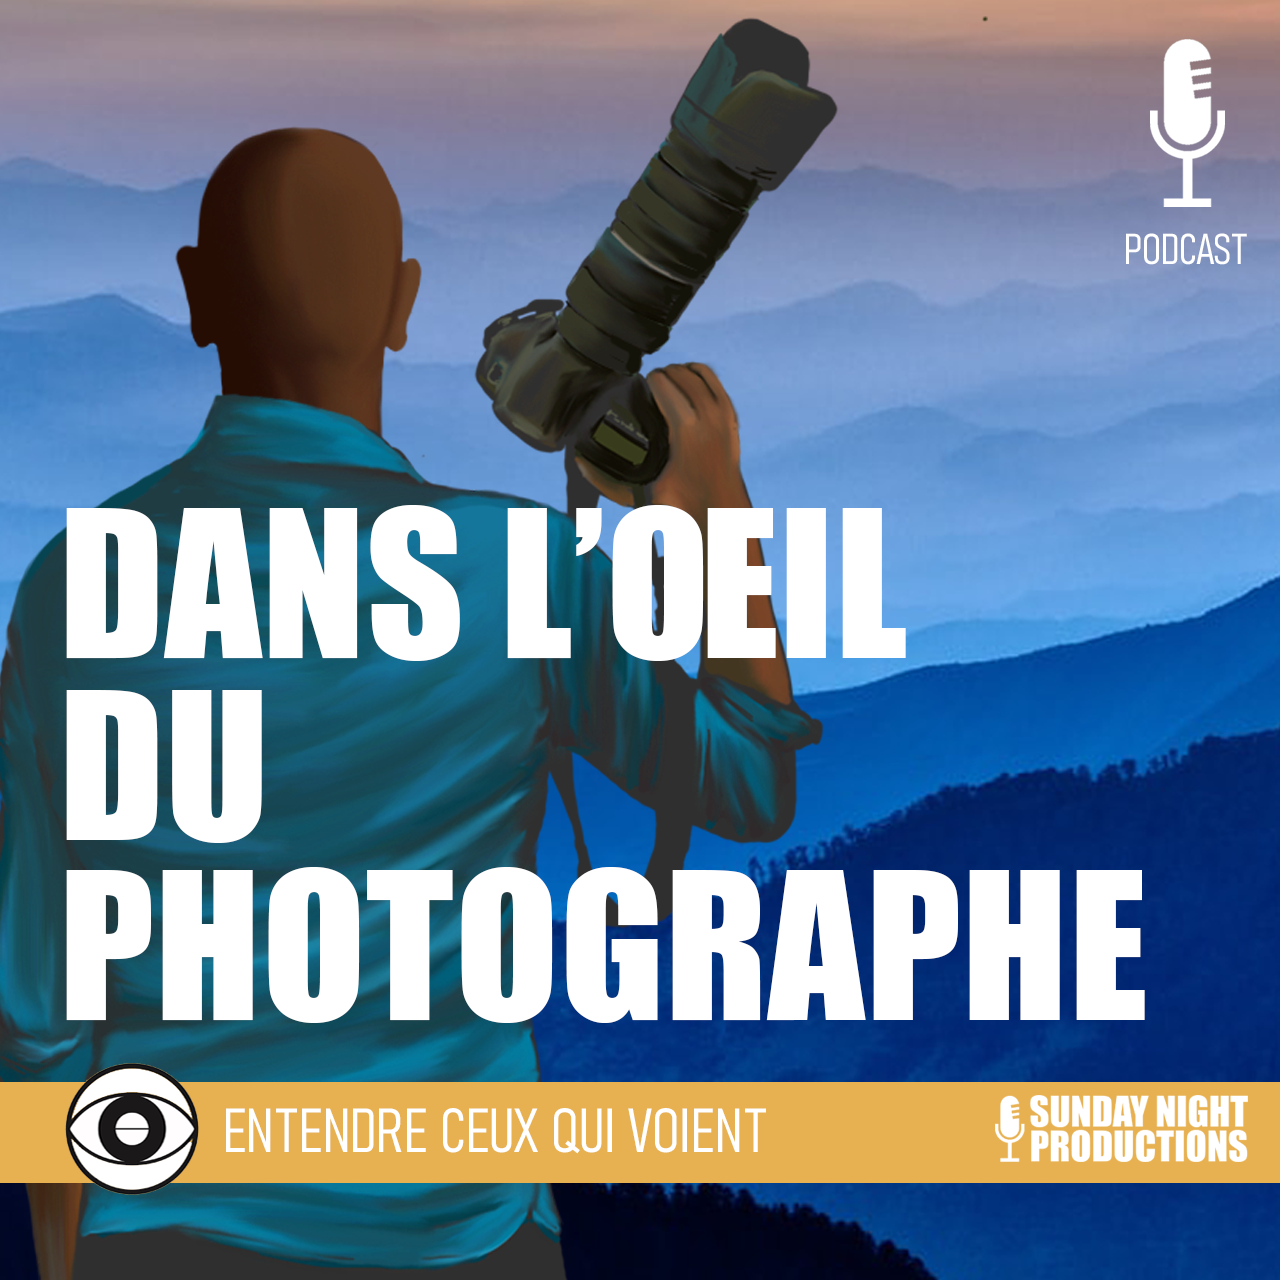 Podcast : Dans l’oeil du photographe